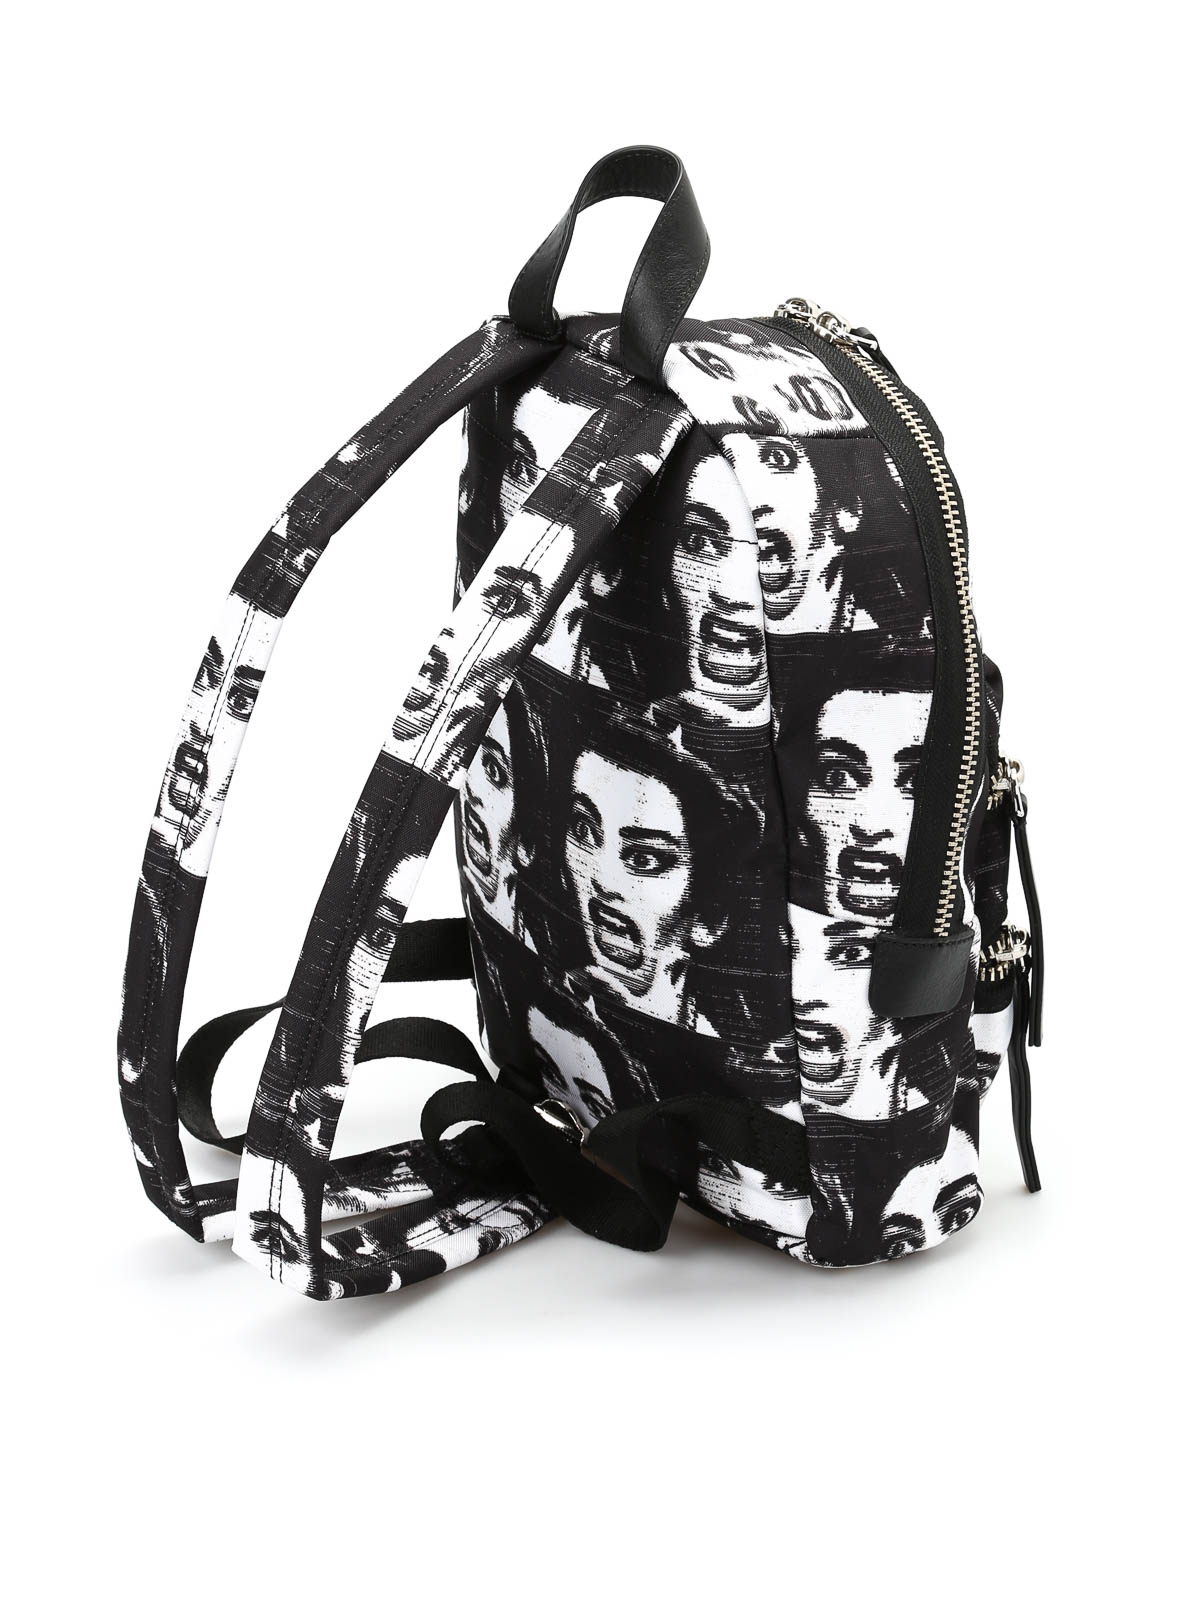 Backpacks Marc Jacobs - Biker mini printed backpack - M0008301002